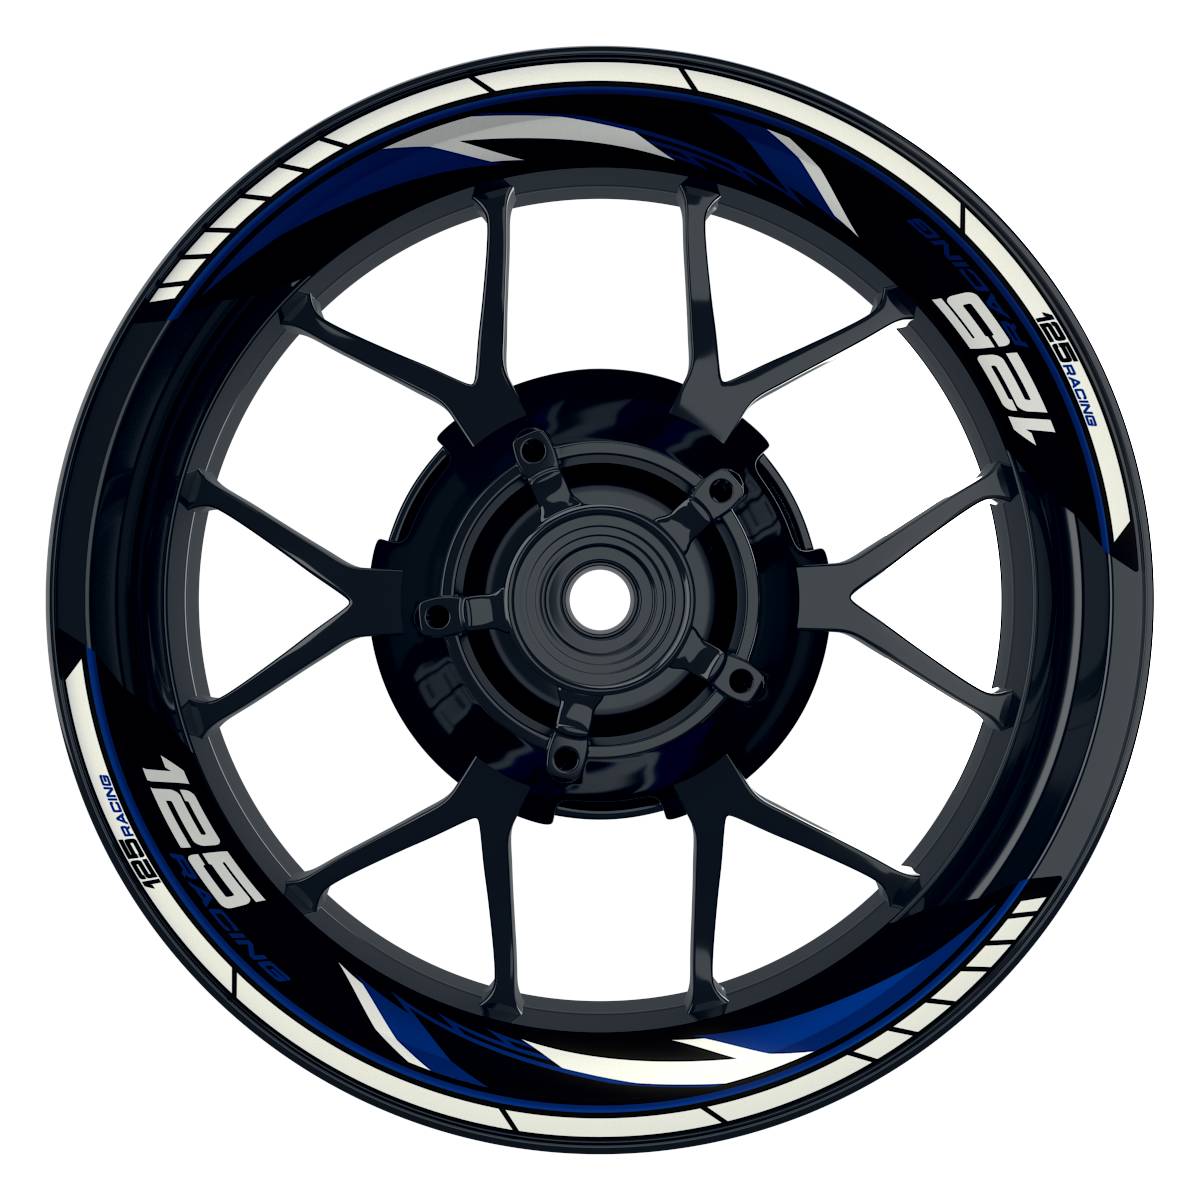 KTM Racing 125 Razor schwarz blau Frontansicht